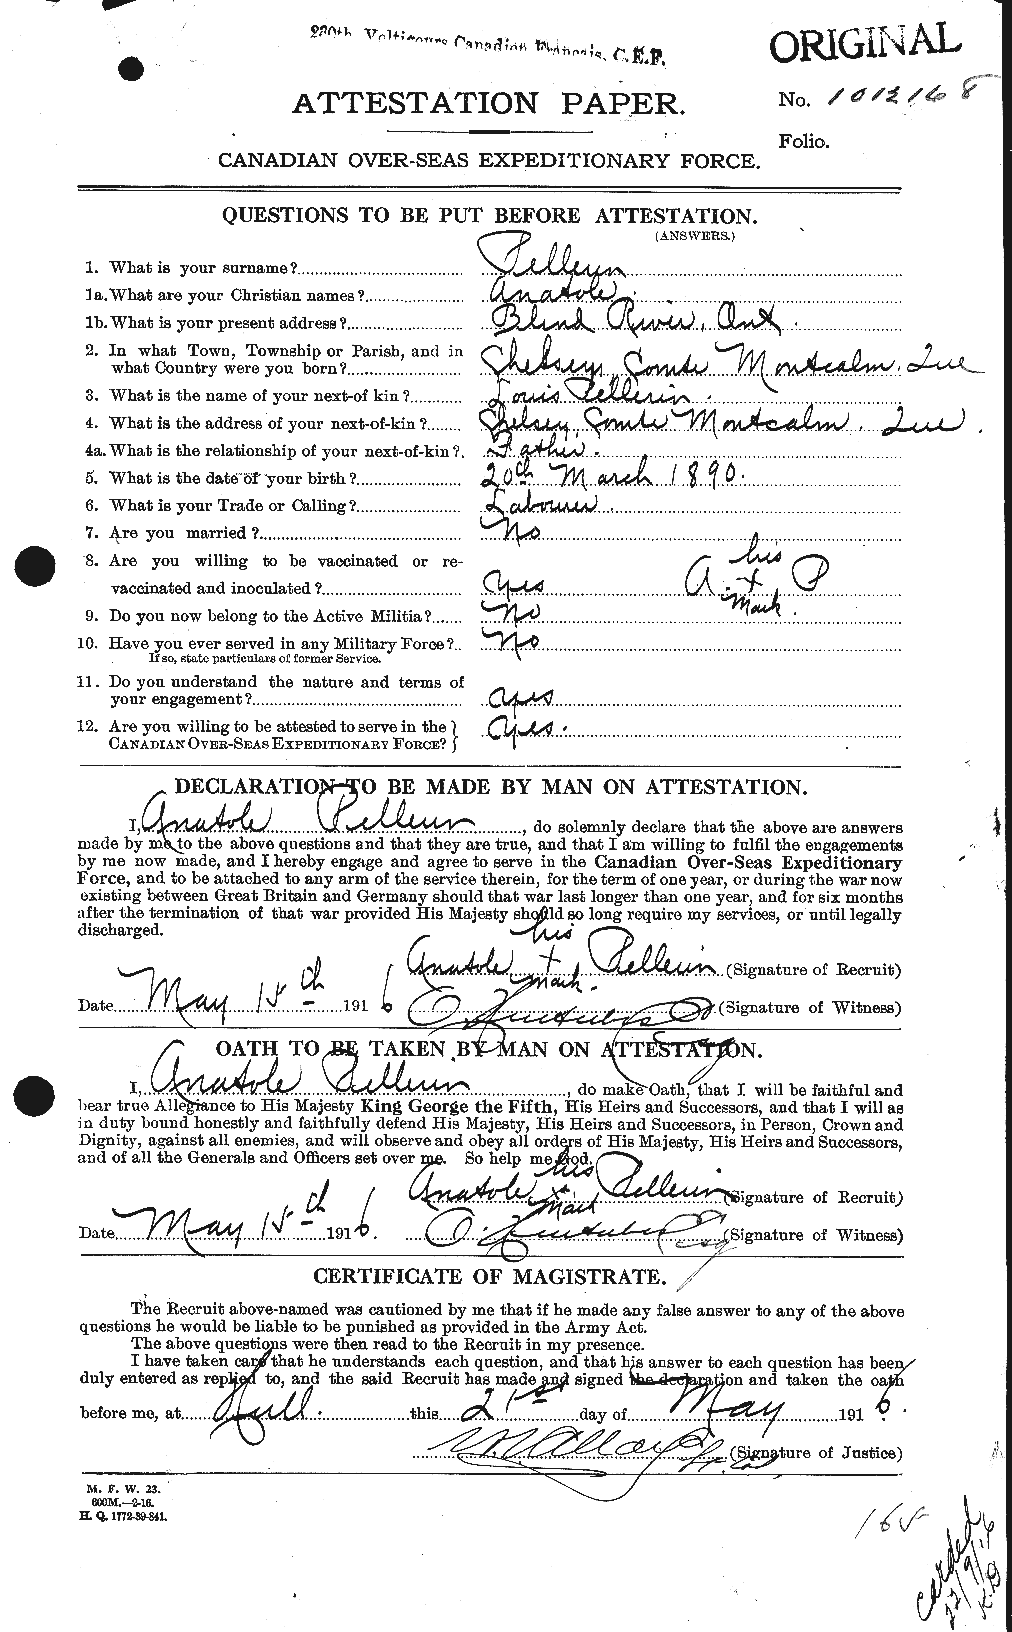 Dossiers du Personnel de la Première Guerre mondiale - CEC 572232a